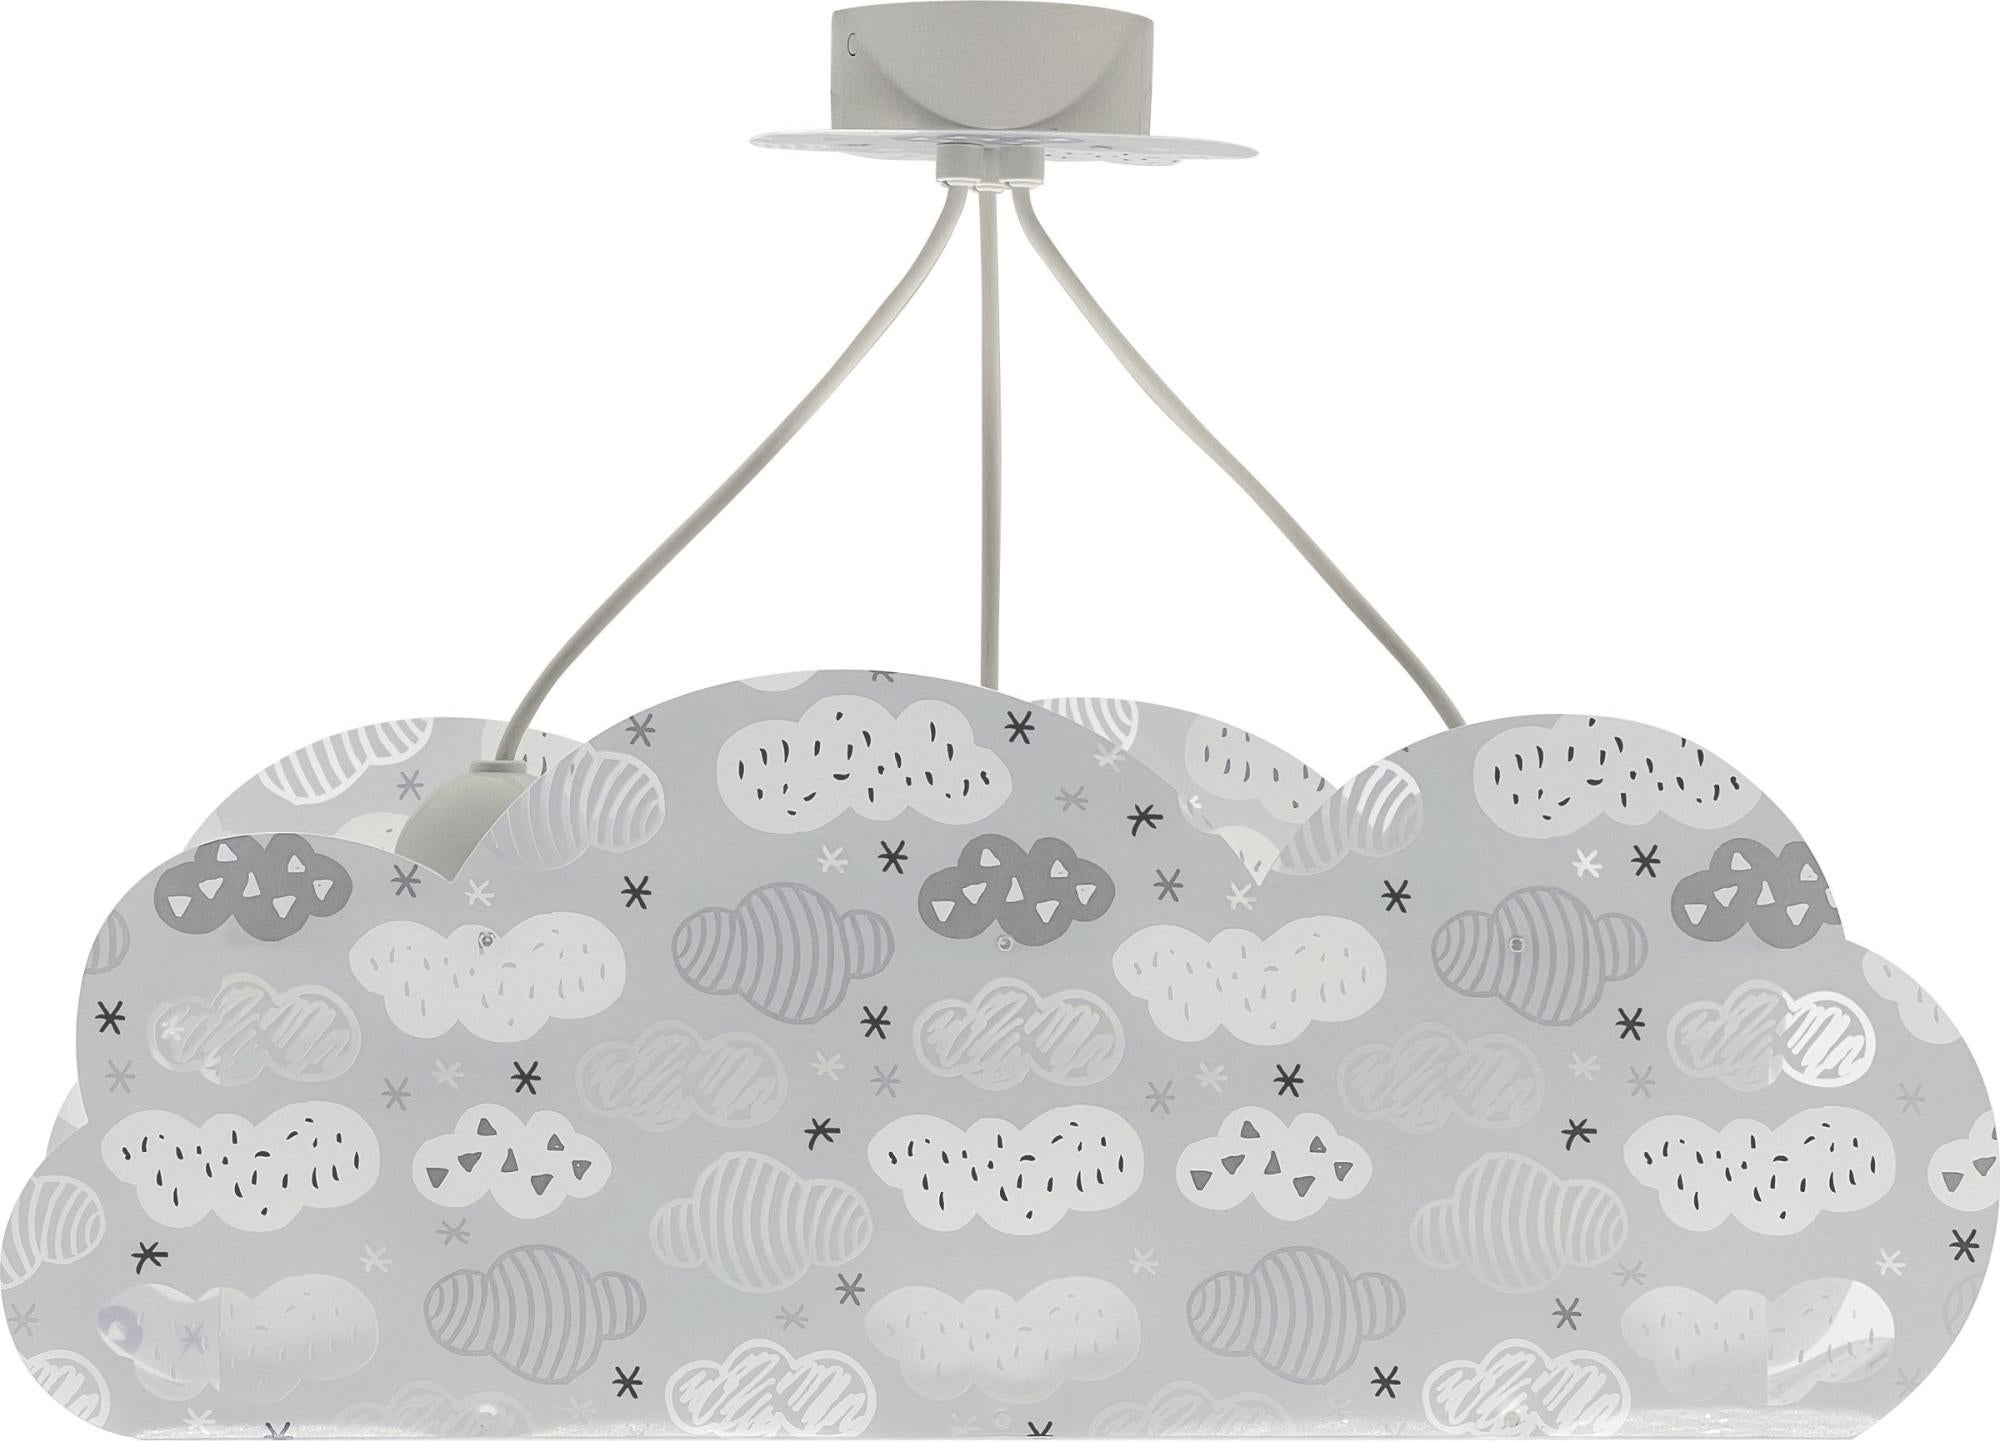 Lámpara de techo cloud gris infantil 3 luces e27 d54 cm